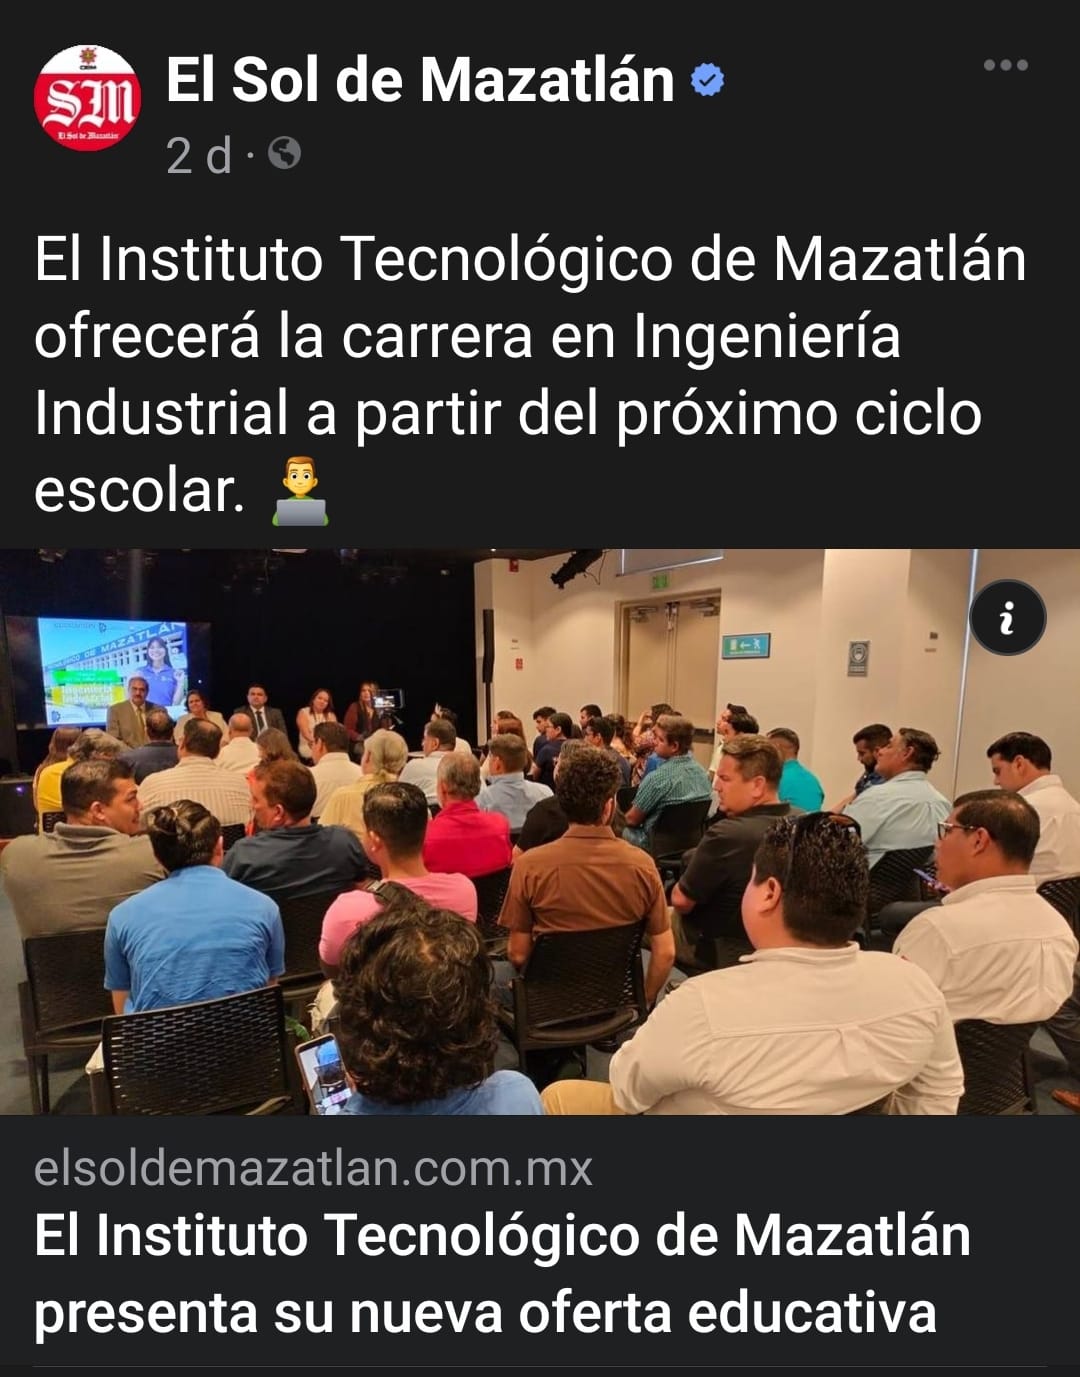 EL INSTITUTO TECNOLÓGICO DE MAZATLAN PRESENTA SU NUEVA OFERTA EDUCATIVA